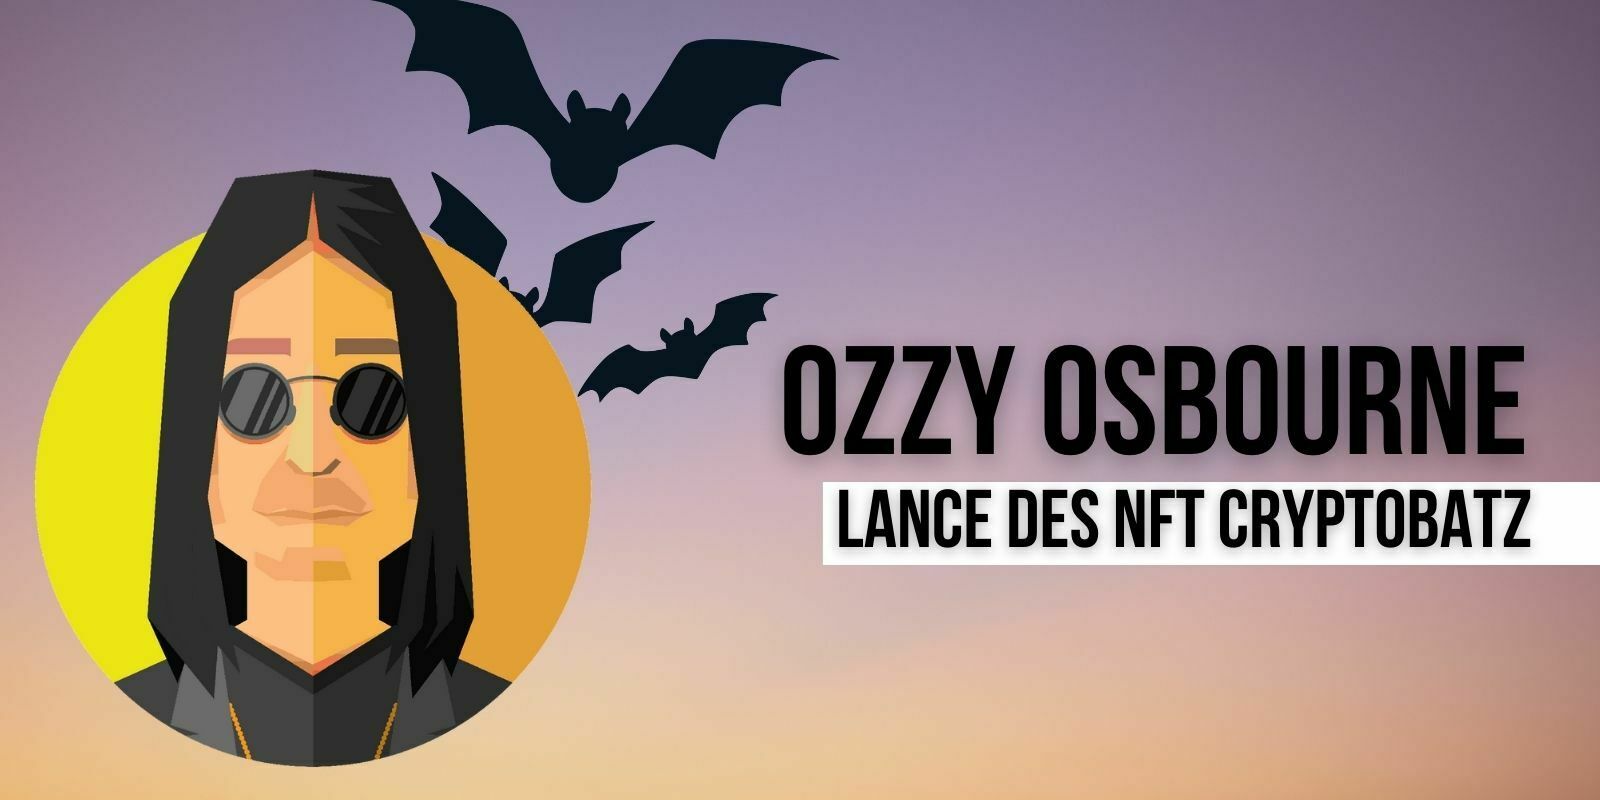 Ozzy Osbourne annonce sa première collection de NFTs, les Cryptobatz